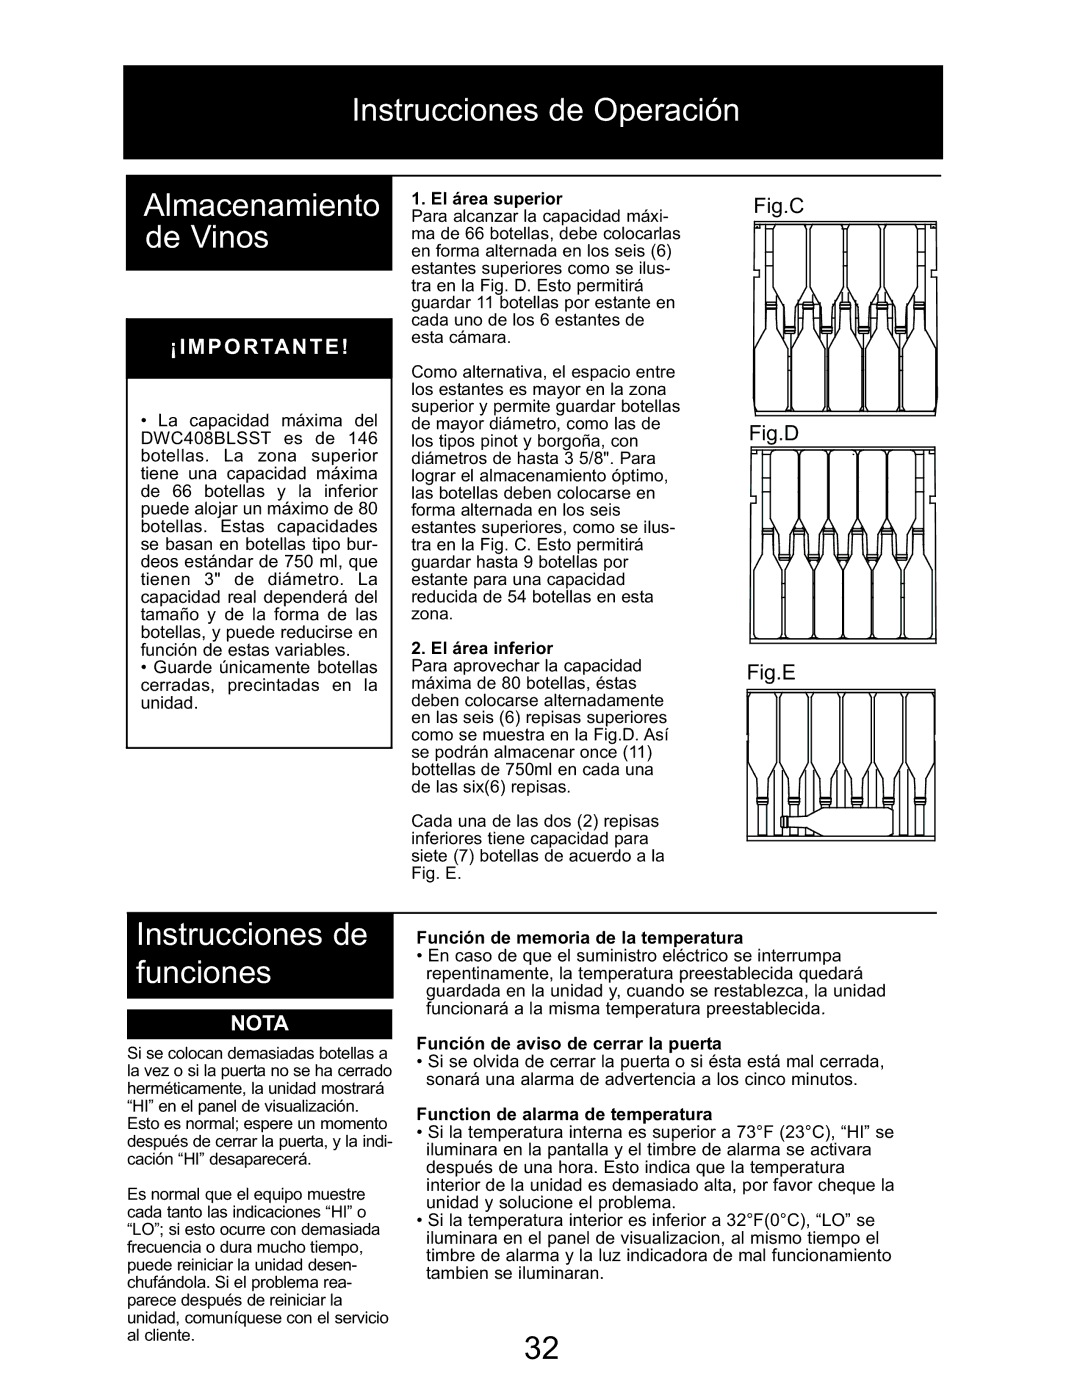 Danby DWC408BLSST owner manual Instrucciones de Operación Almacenamiento de Vinos, Instrucciones de funciones 